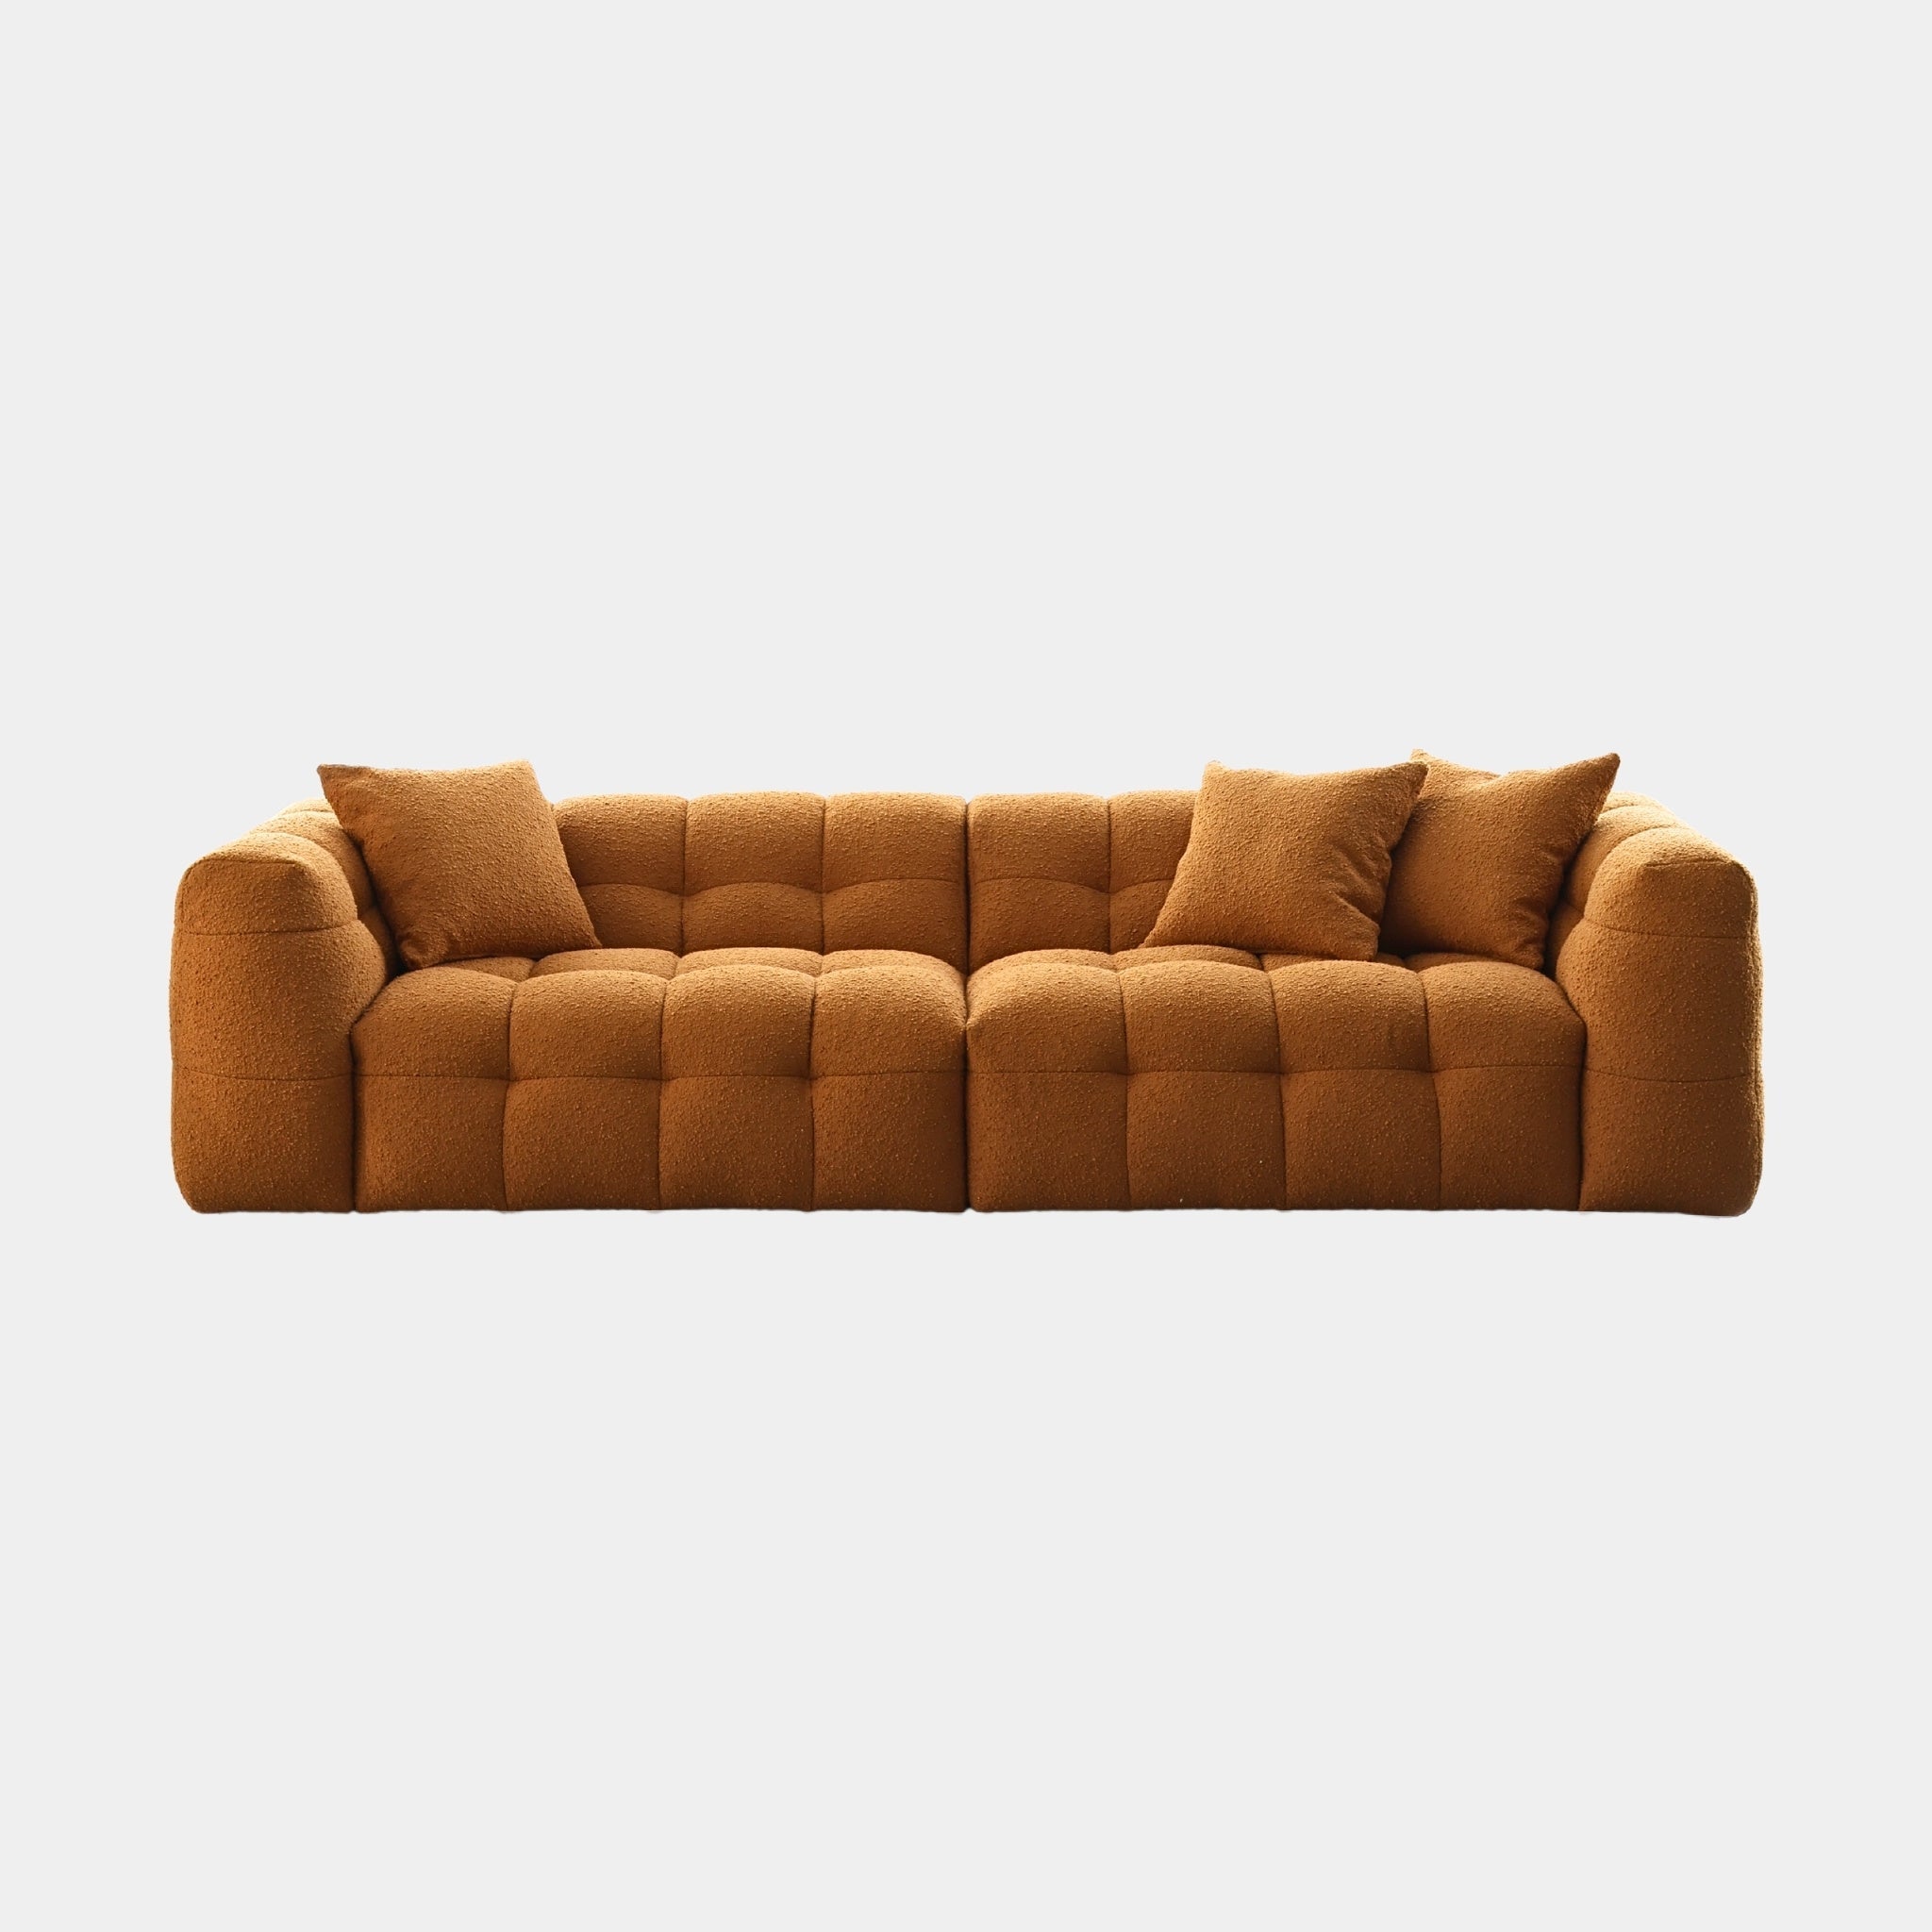 Marshmallow Sofa - The Feelter